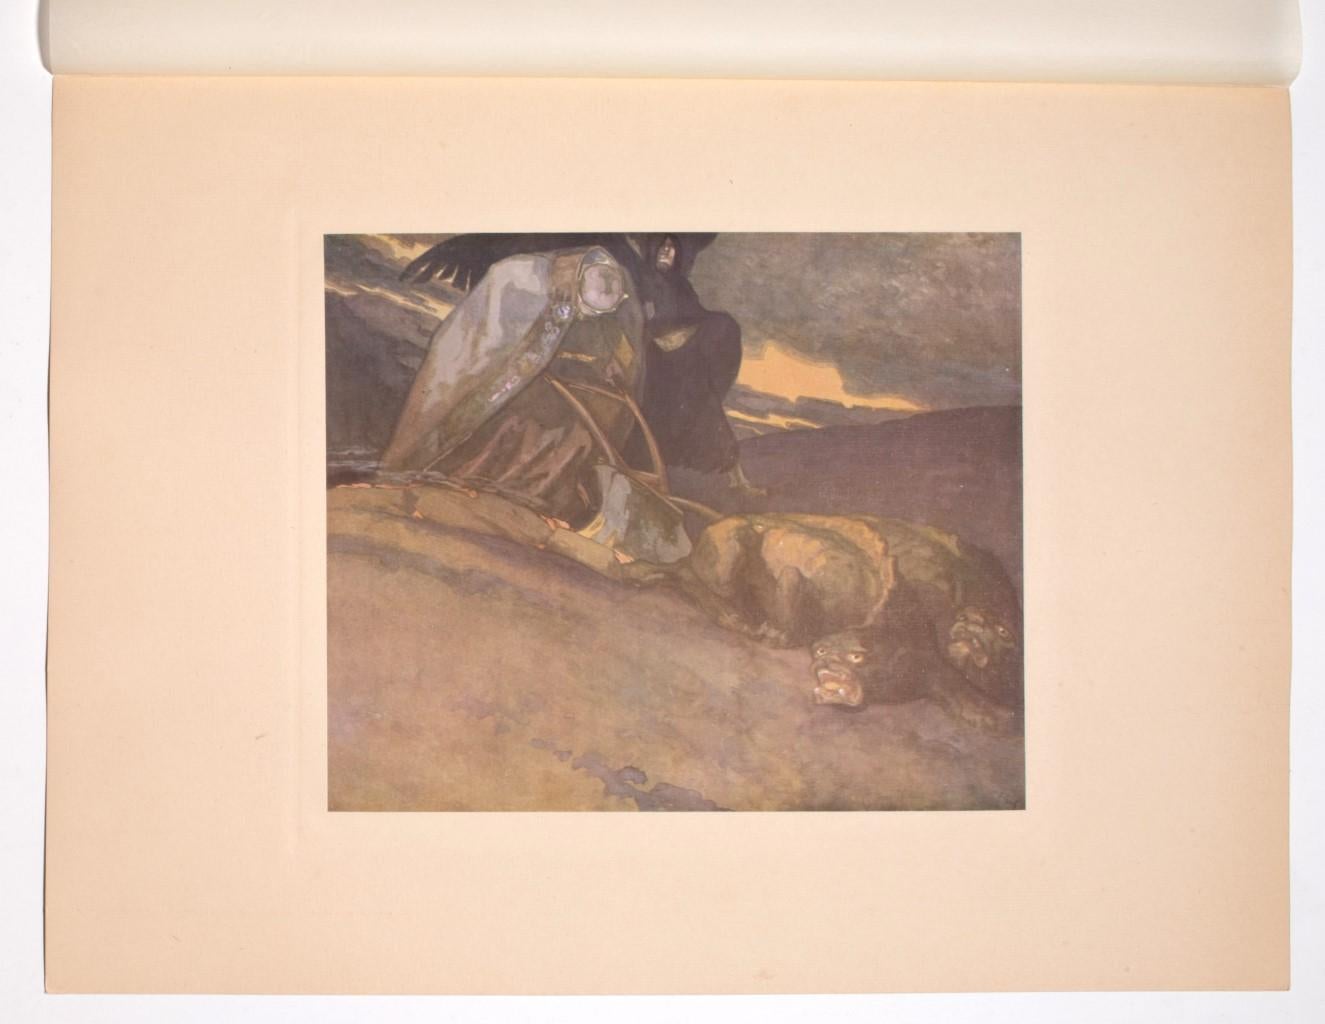 Schutzengraben - Héliogravure by Franz von Bayros - 1920s - Print by Franz von Bayros (Choisi Le Conin)